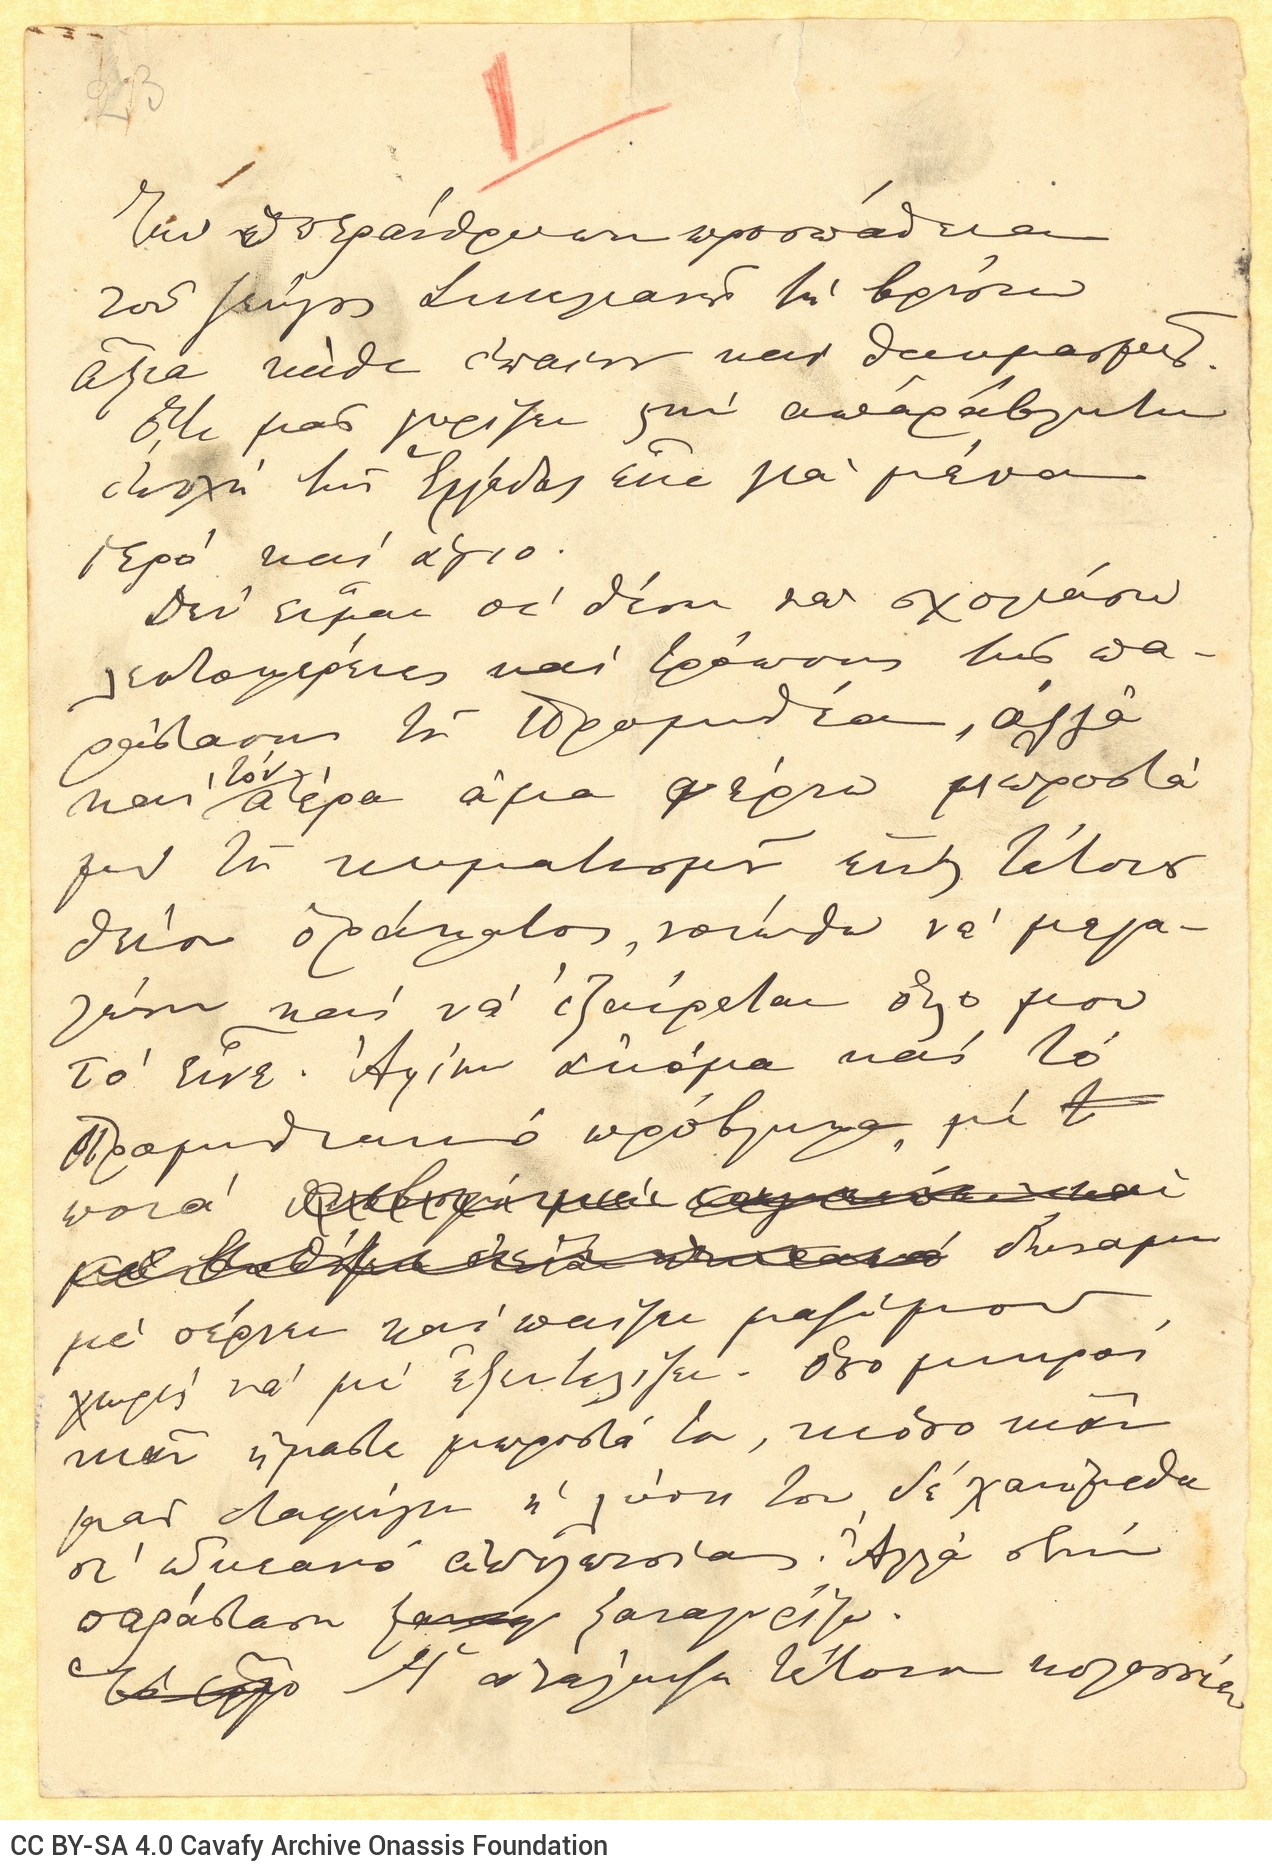 Χειρόγραφο κείμενο σχετικό με τις Δελφικές Εορτές στη μία όψη δύο φύ